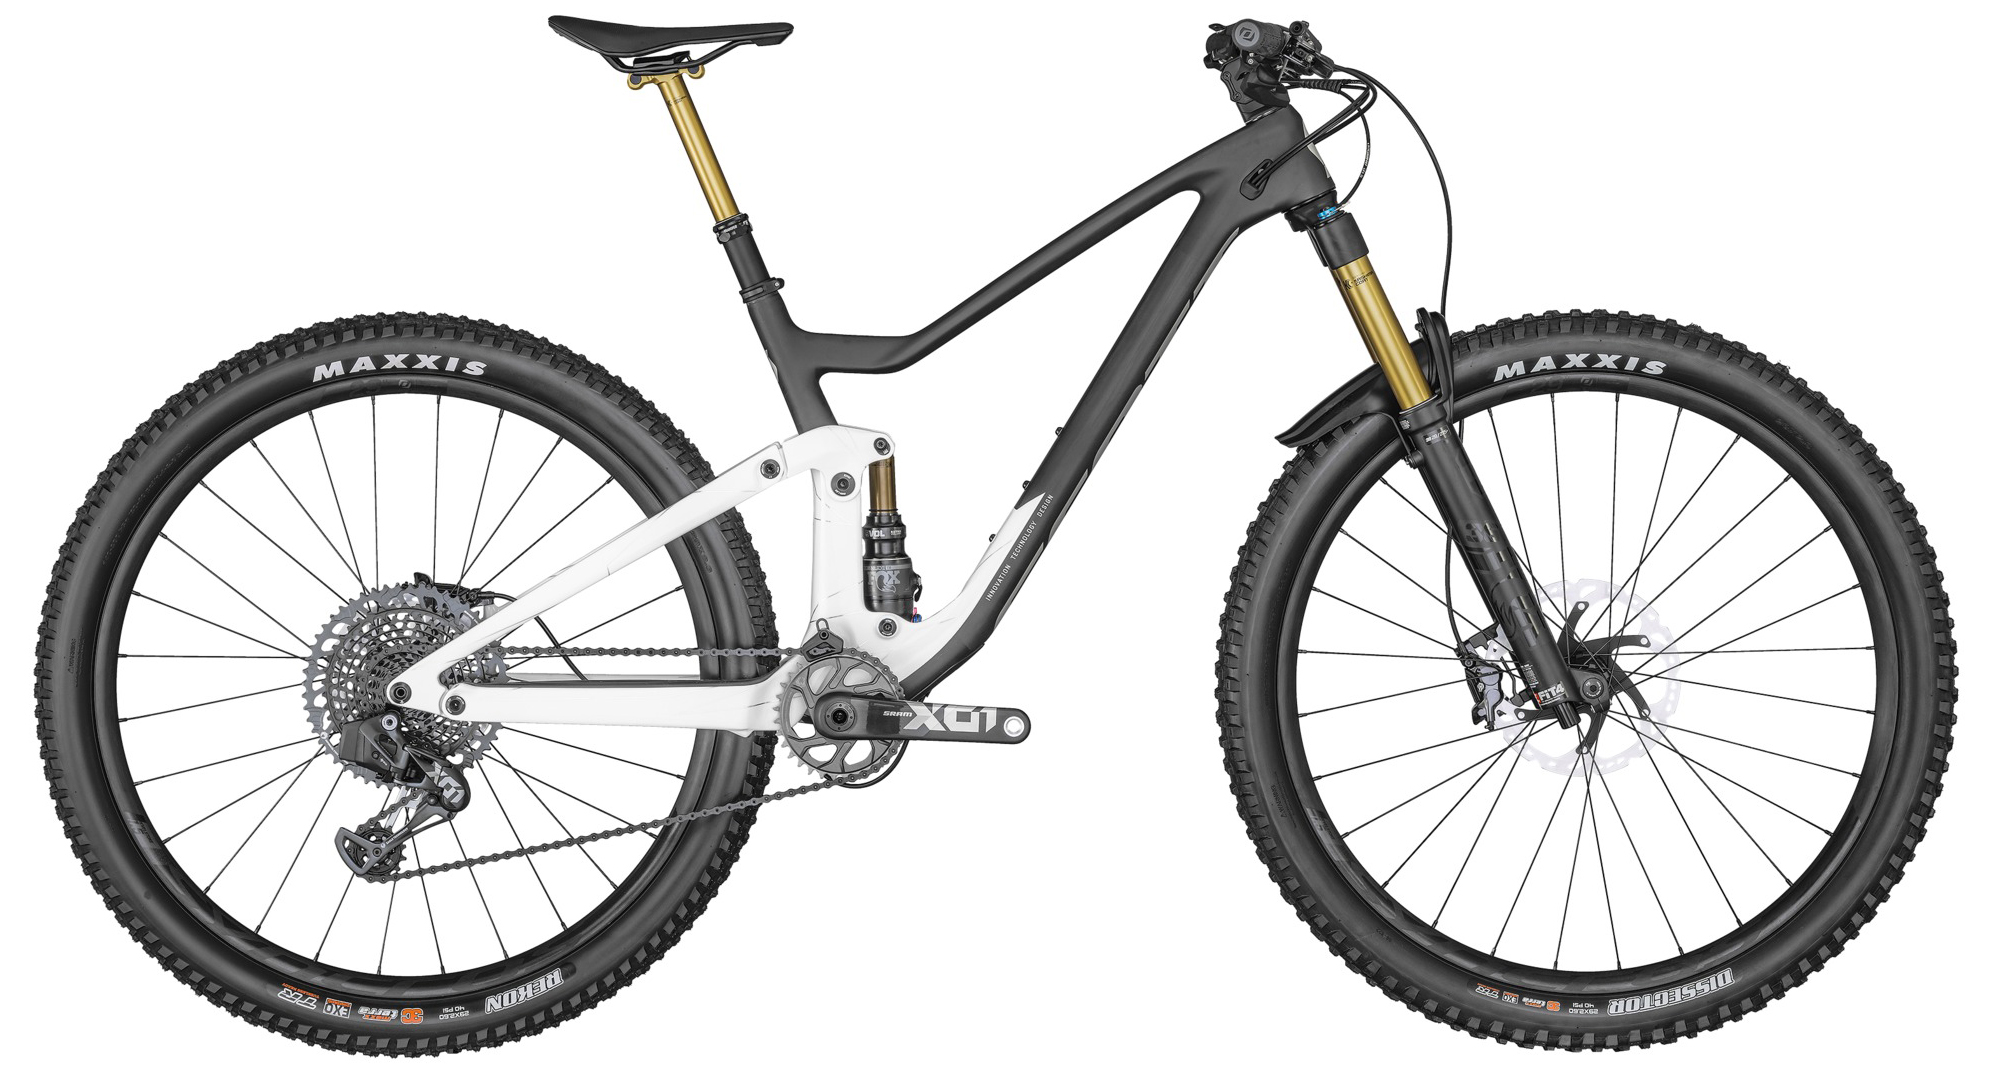  Отзывы о Двухподвесном велосипеде Scott Genius 900 Tuned AXS 2022